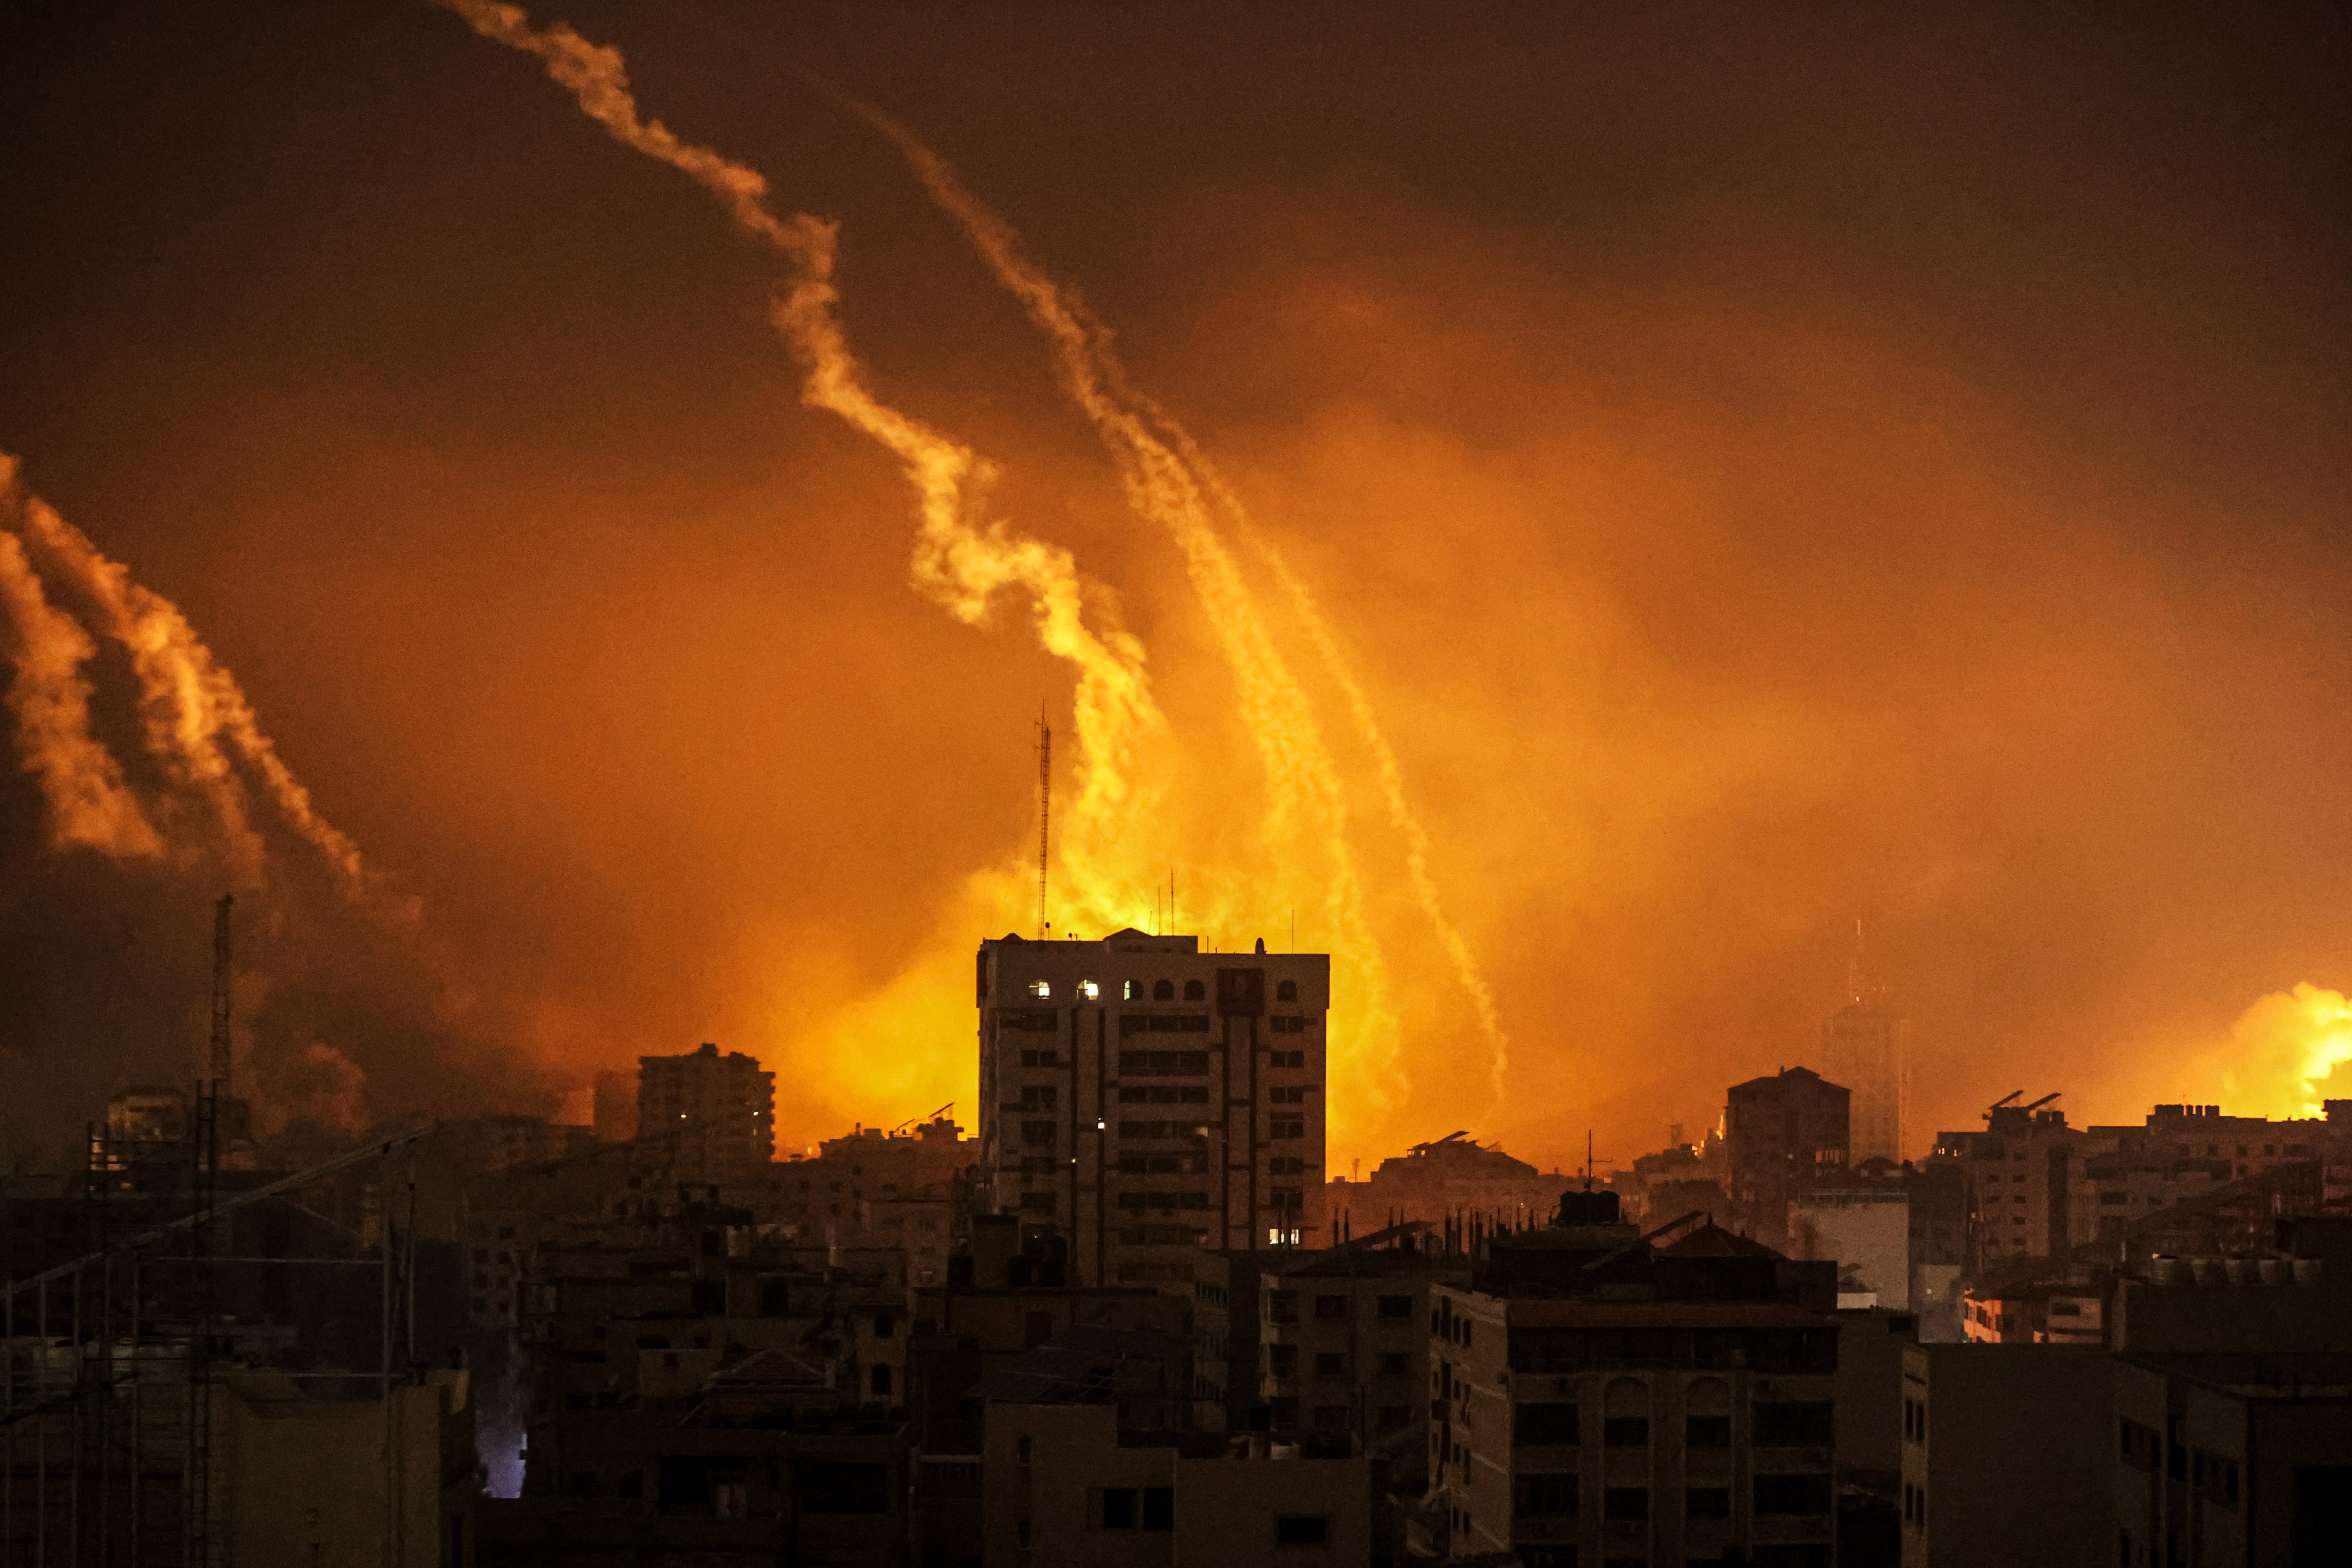 Krieg im Nahen Osten - Israel verstärkt Truppen im Gazastreifen; Hamas setzt Raketenangriffe fort